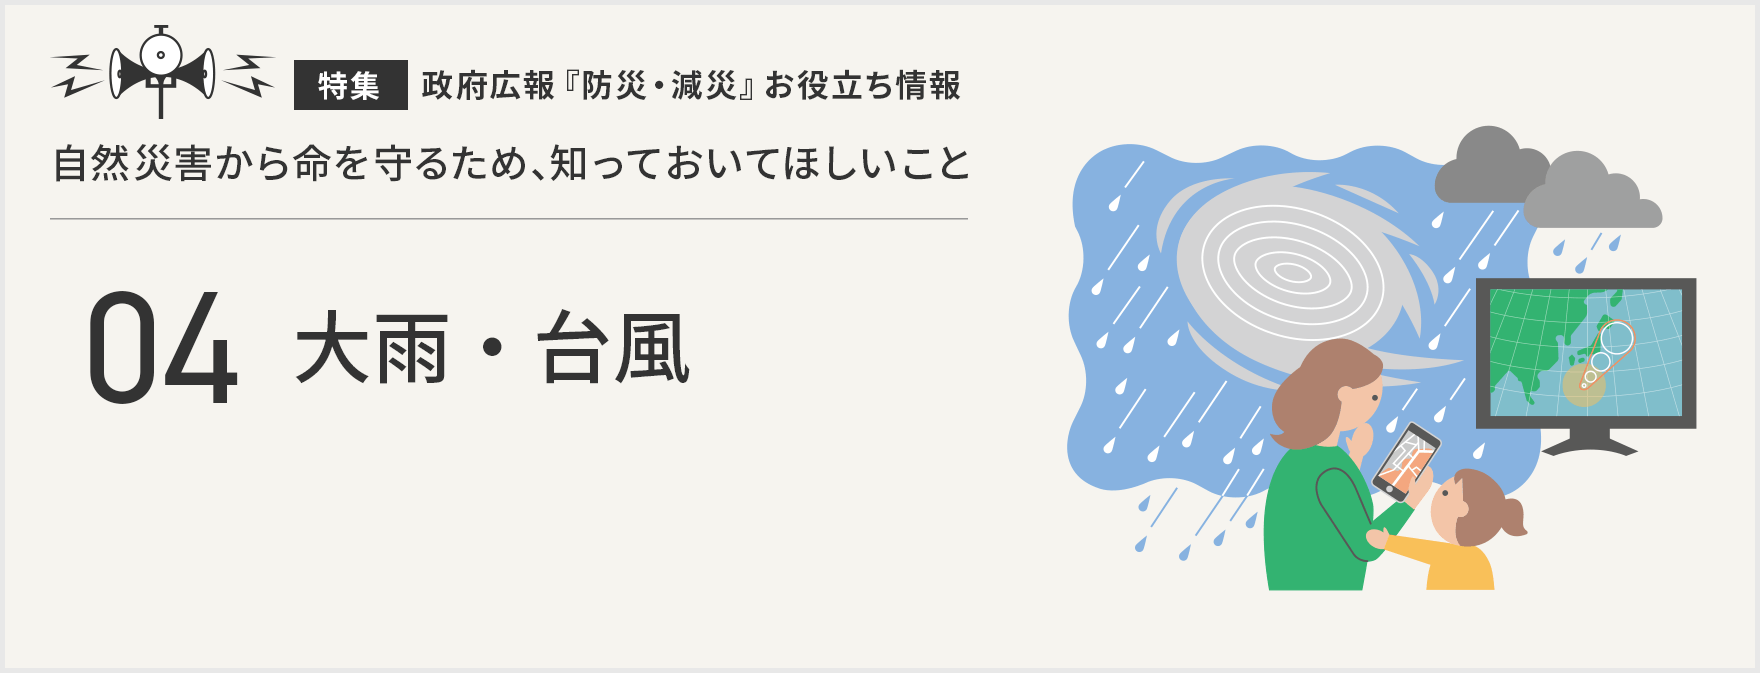 『特集』政府広報『防災・減災』お役立ち情報 自然災害から命を守るため、知っておいてほしいこと 大雨・台風